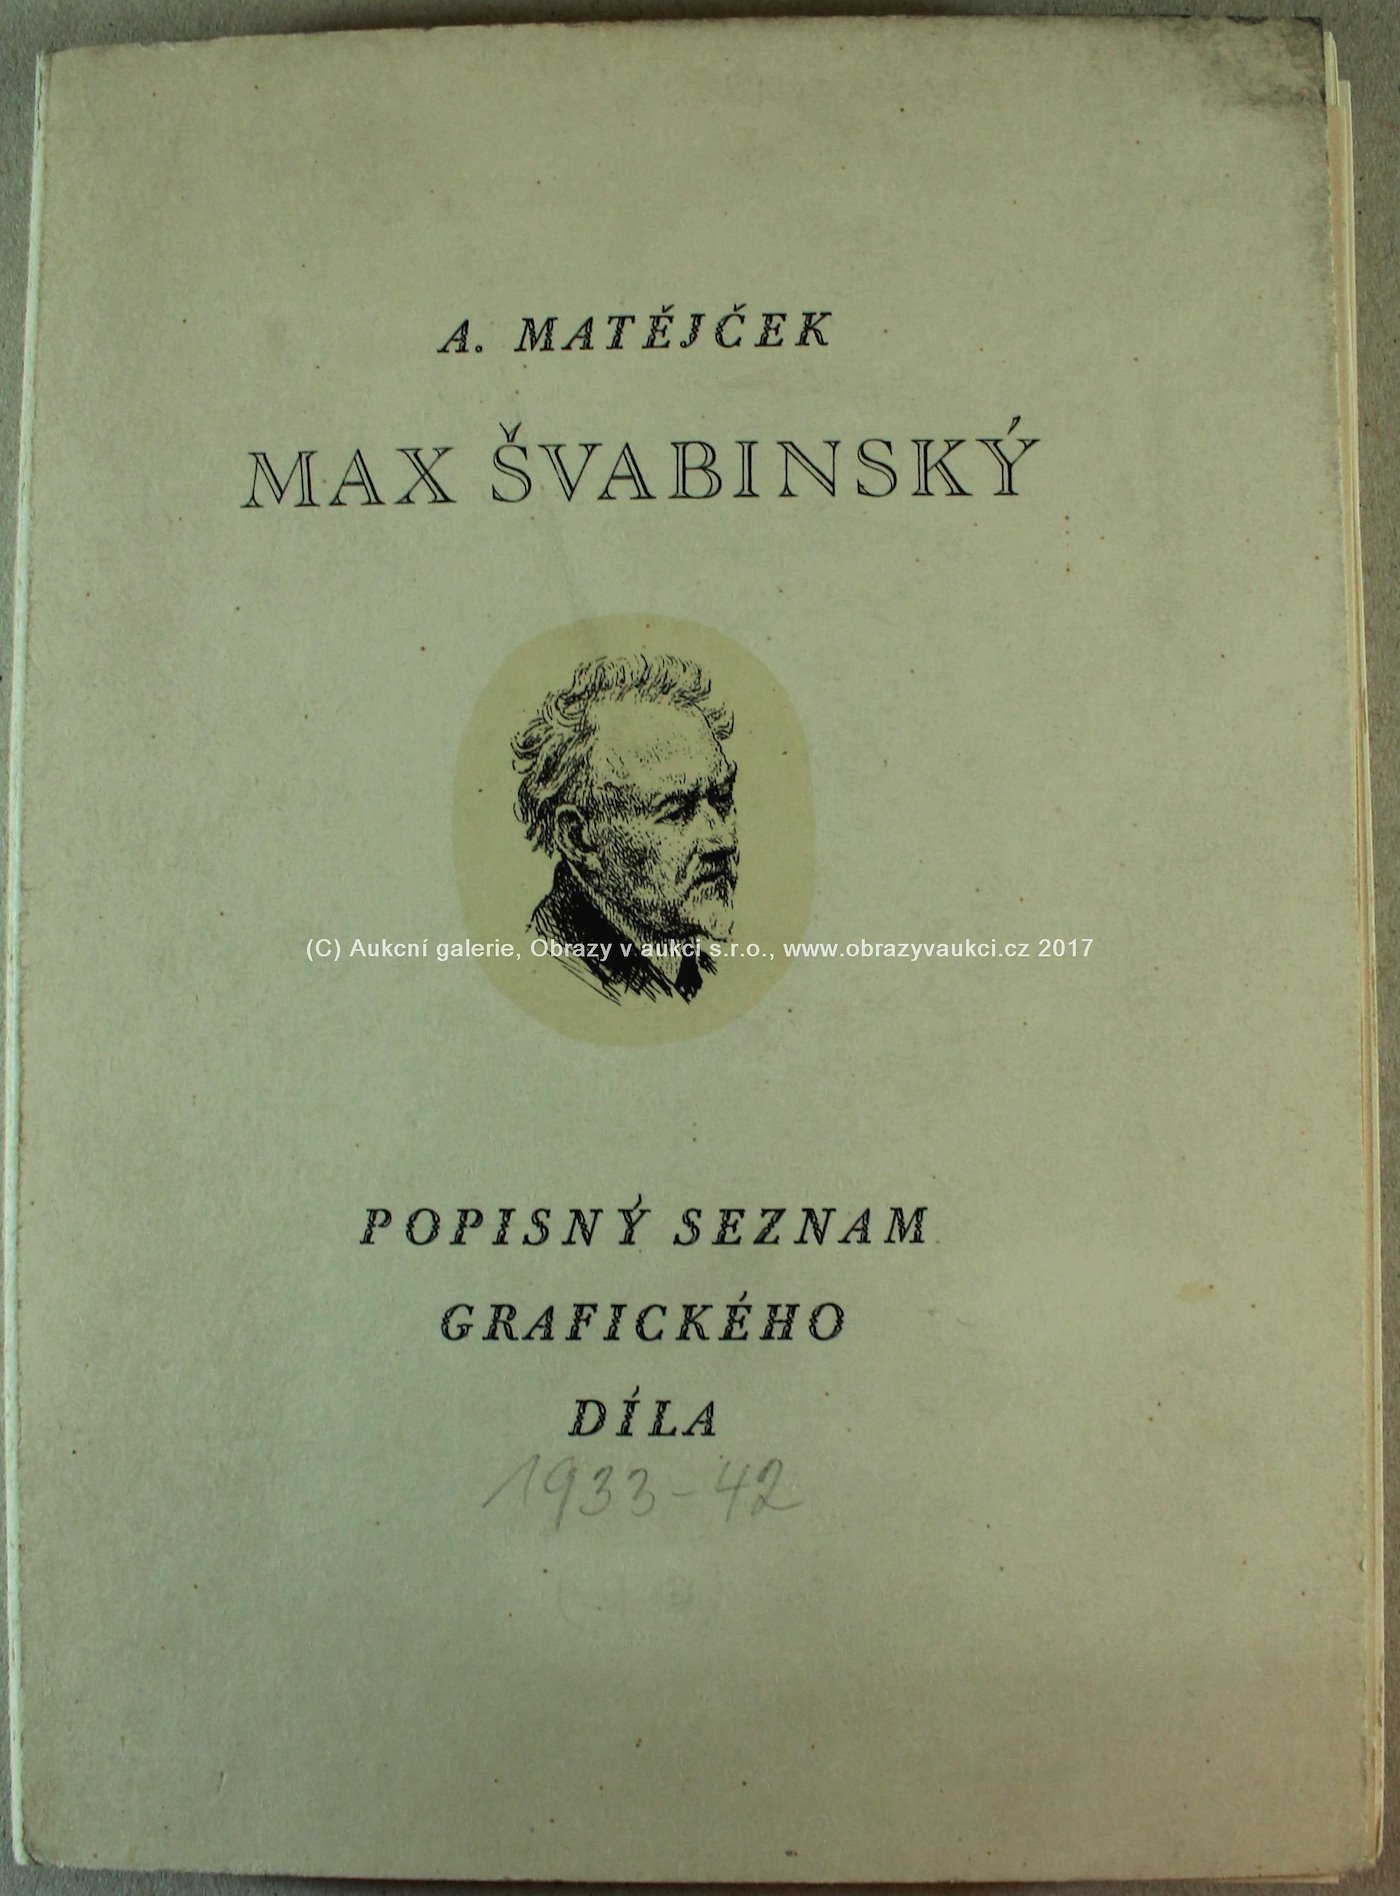 Max Švabinský - Popisný seznam grafického díla 1933-1942